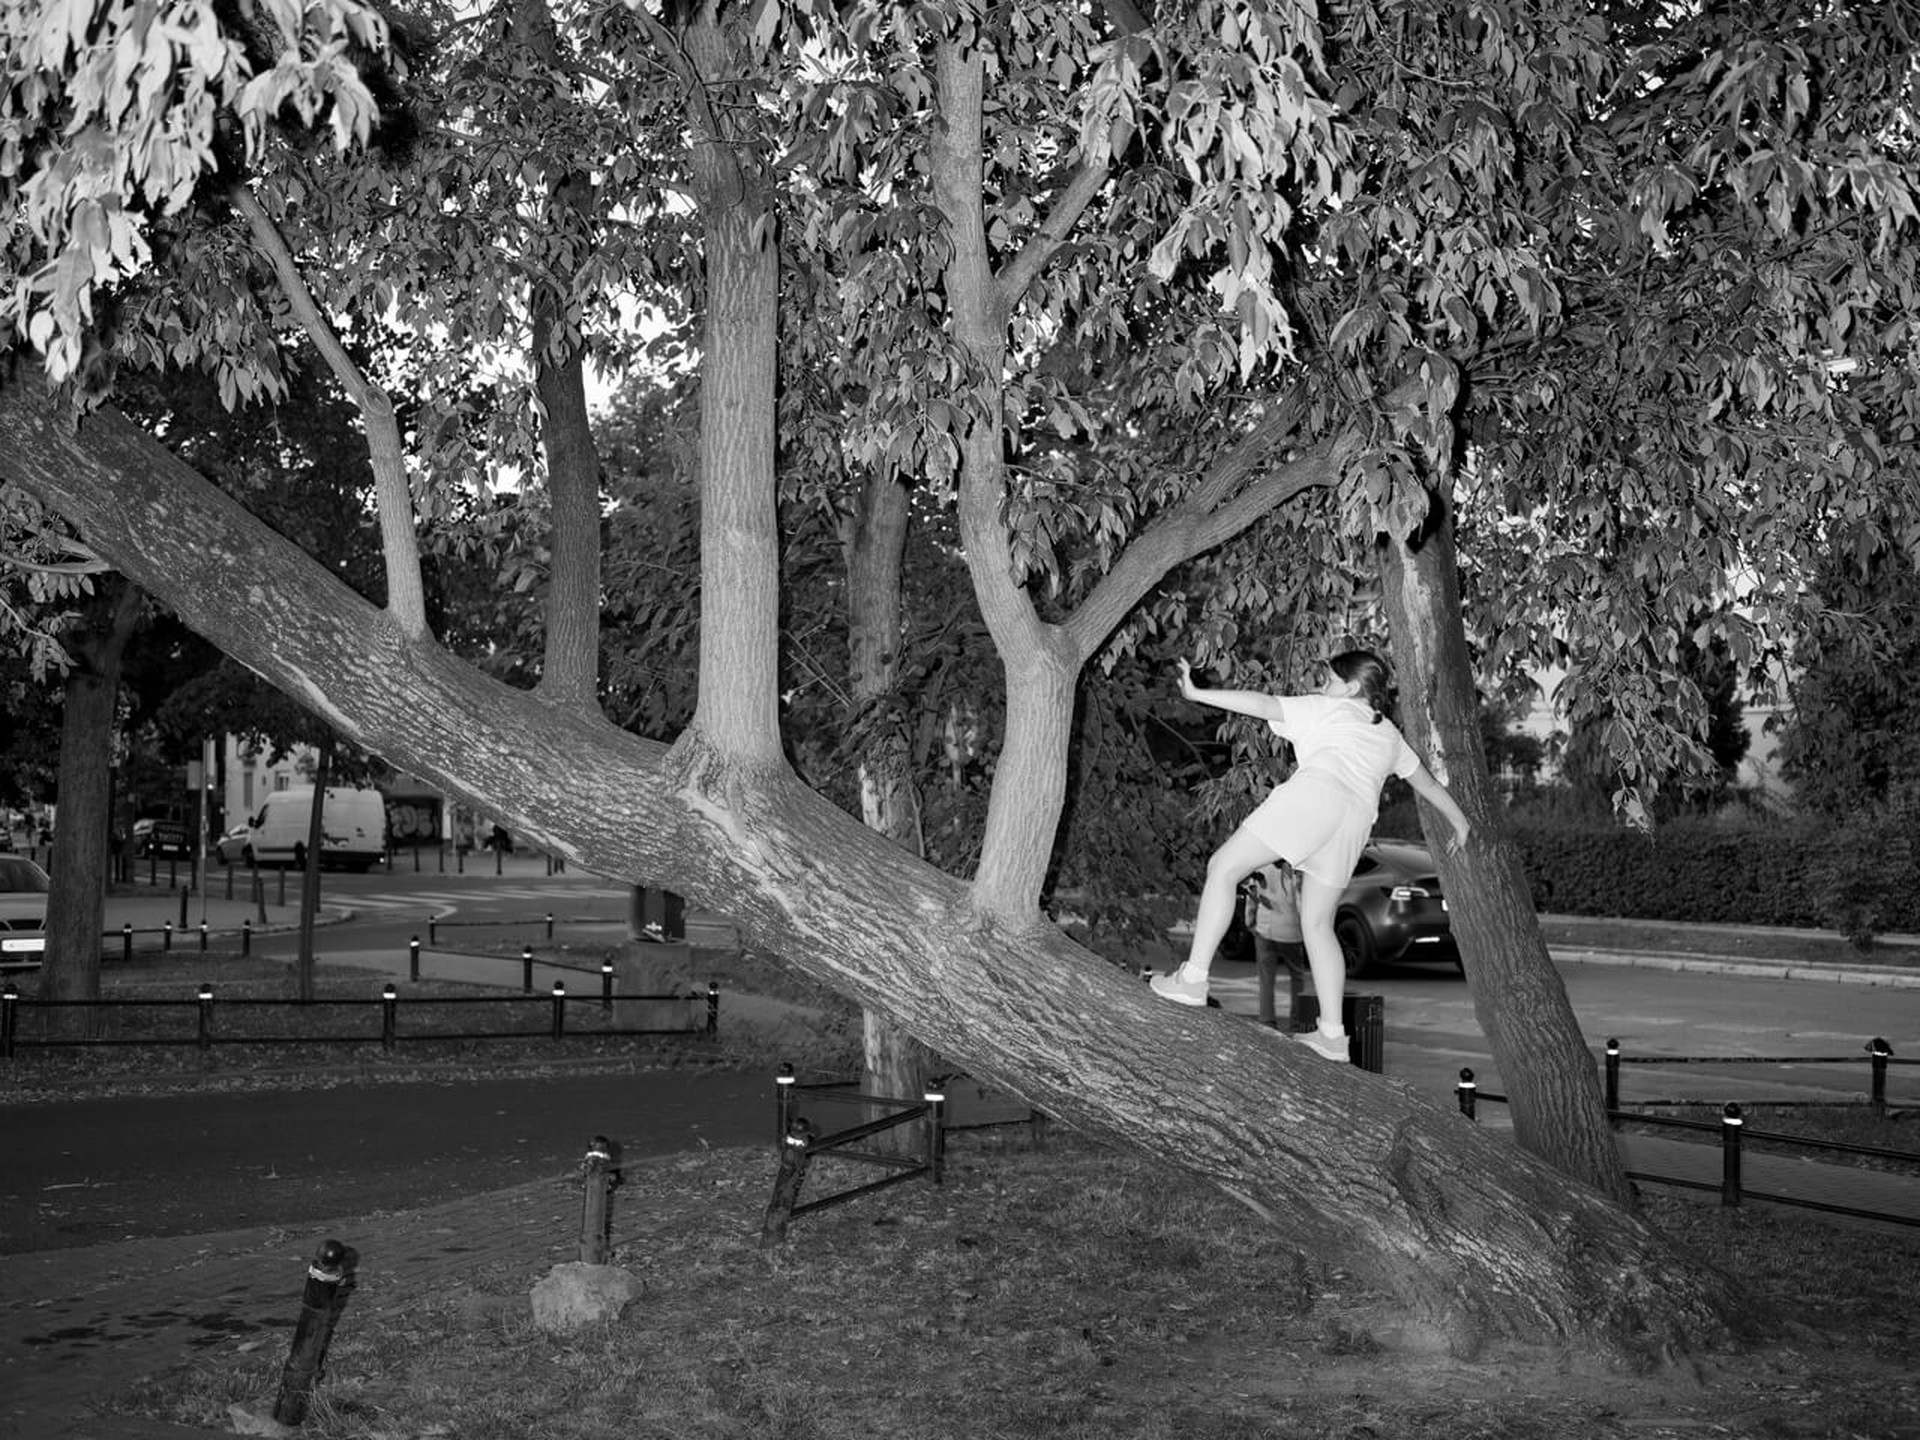  Młoda dziewczyna wspinająca się na pochylone drzewo. Ujęcie 2. 